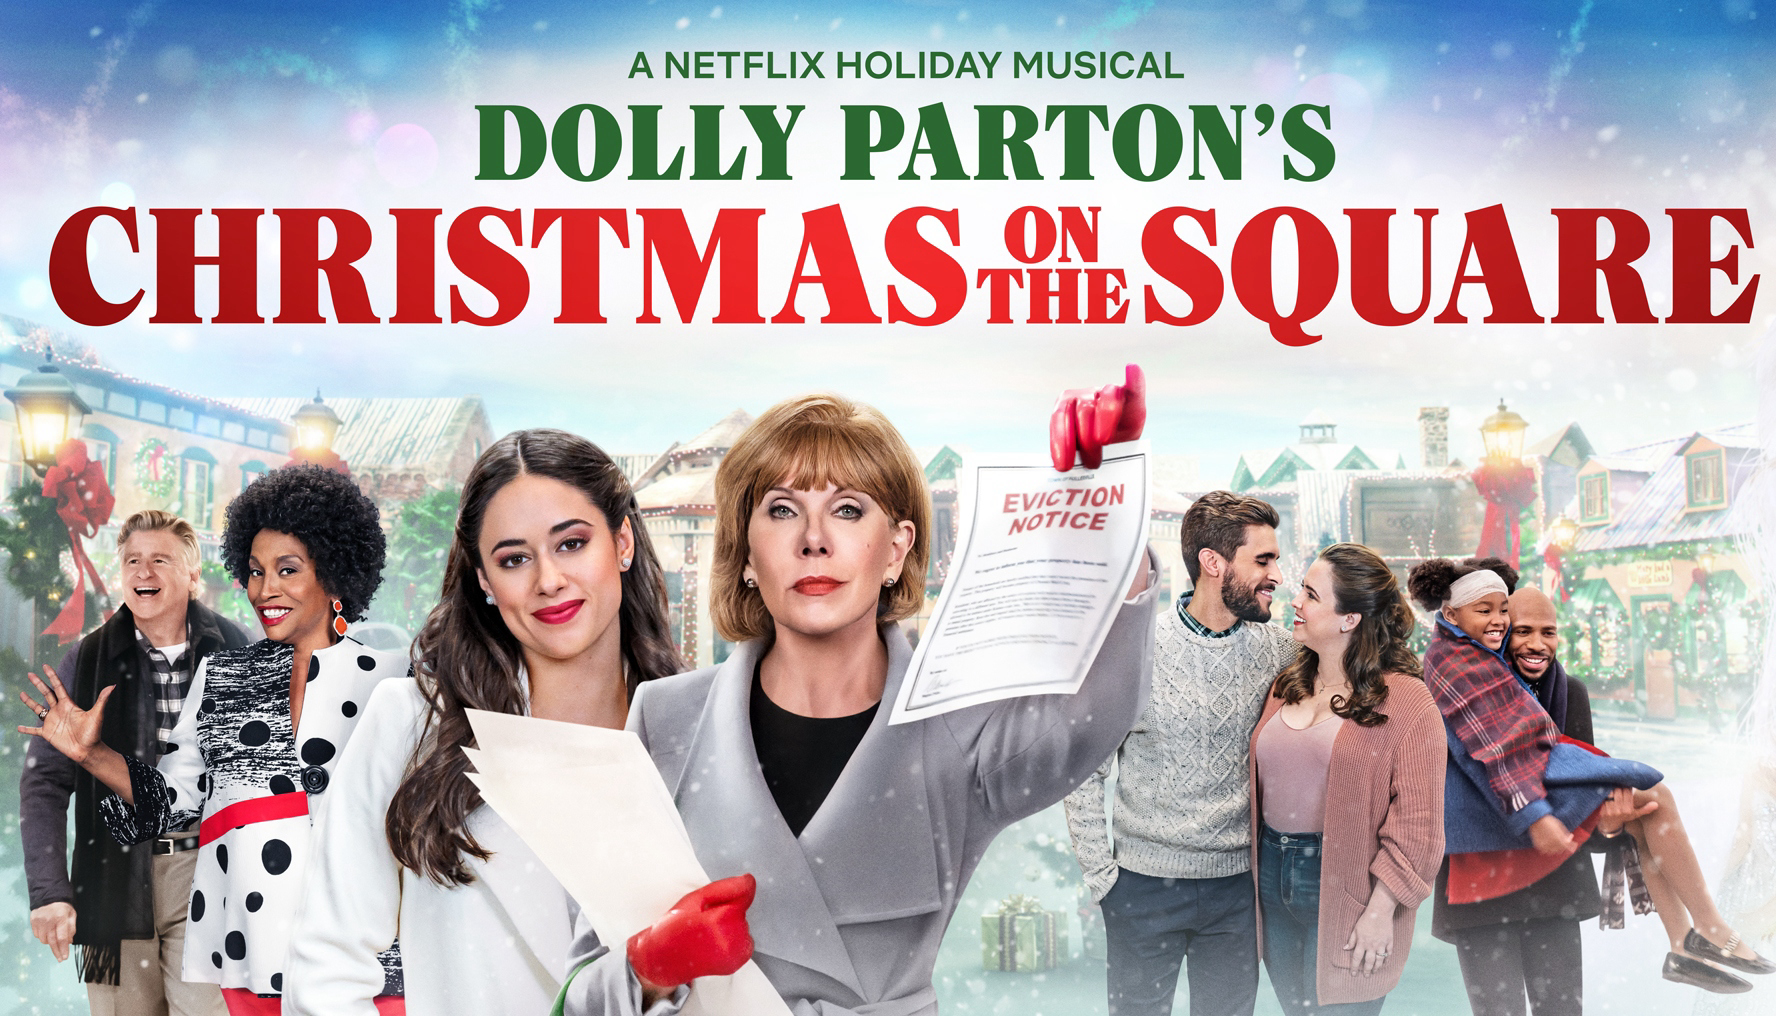 Dolly Parton: Giáng sinh trên quảng trường - Dolly Parton’s Christmas on the Square (2020)